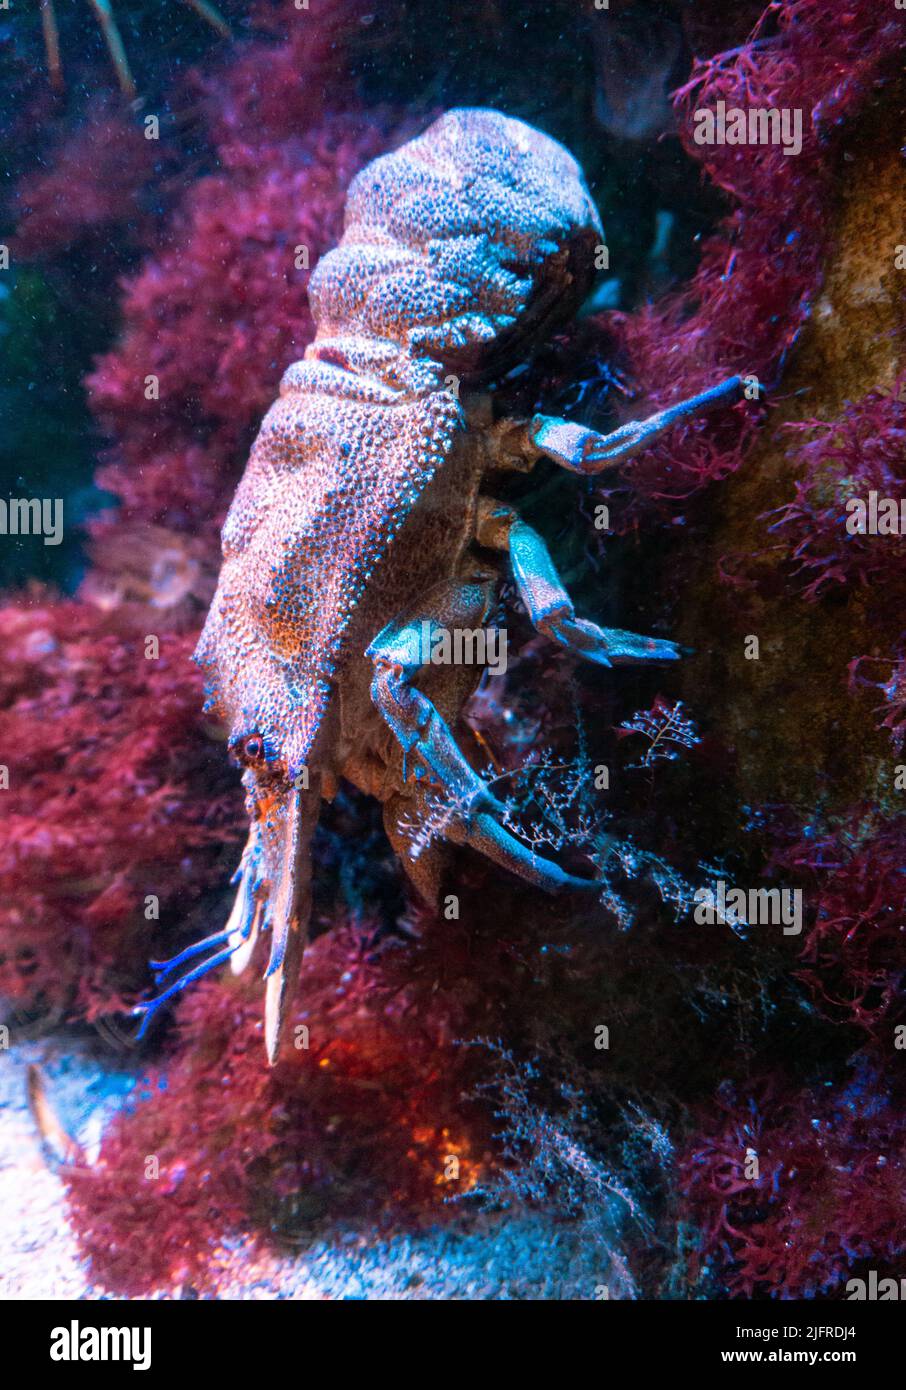 Ein großer Krustentier mit vielen Beinen und massiven Zangen, senkt einen Stein voller Korallen und bunten Pflanzen. Stockfoto